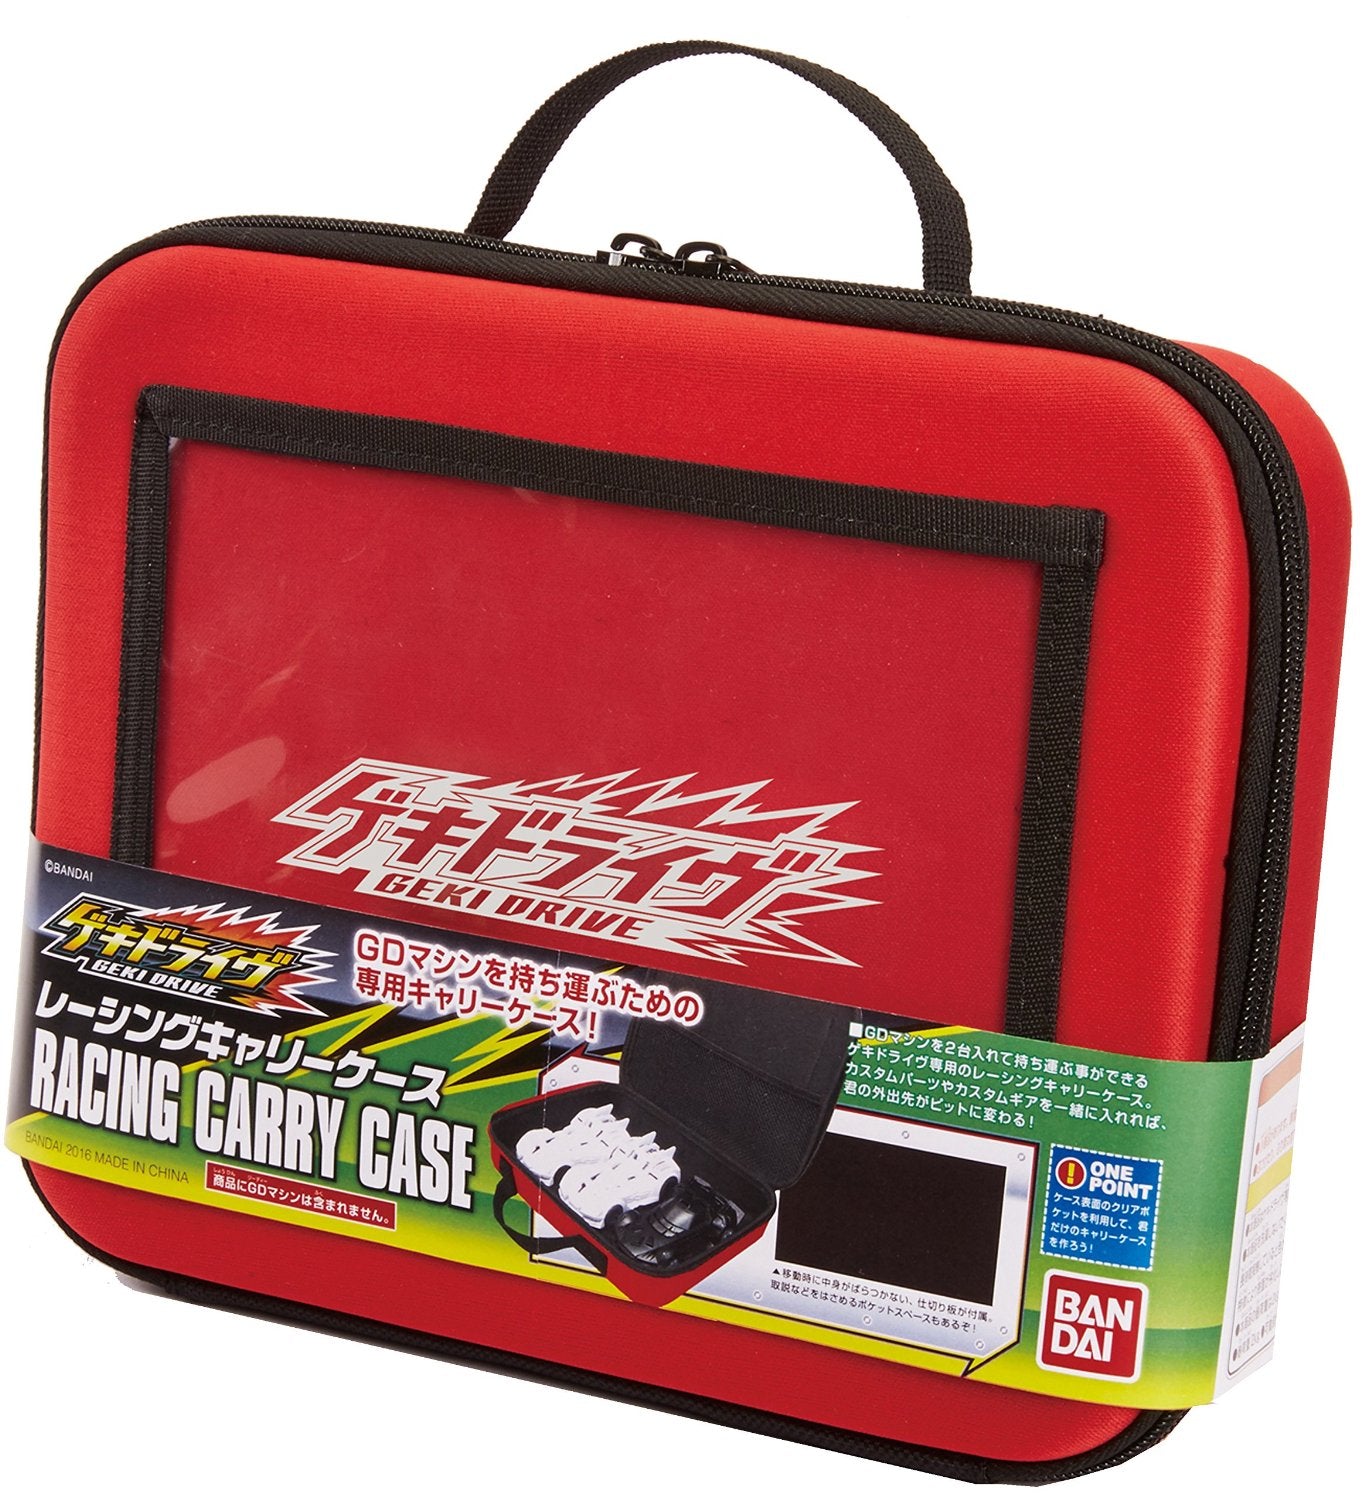 CG-001 Racing Carry Case